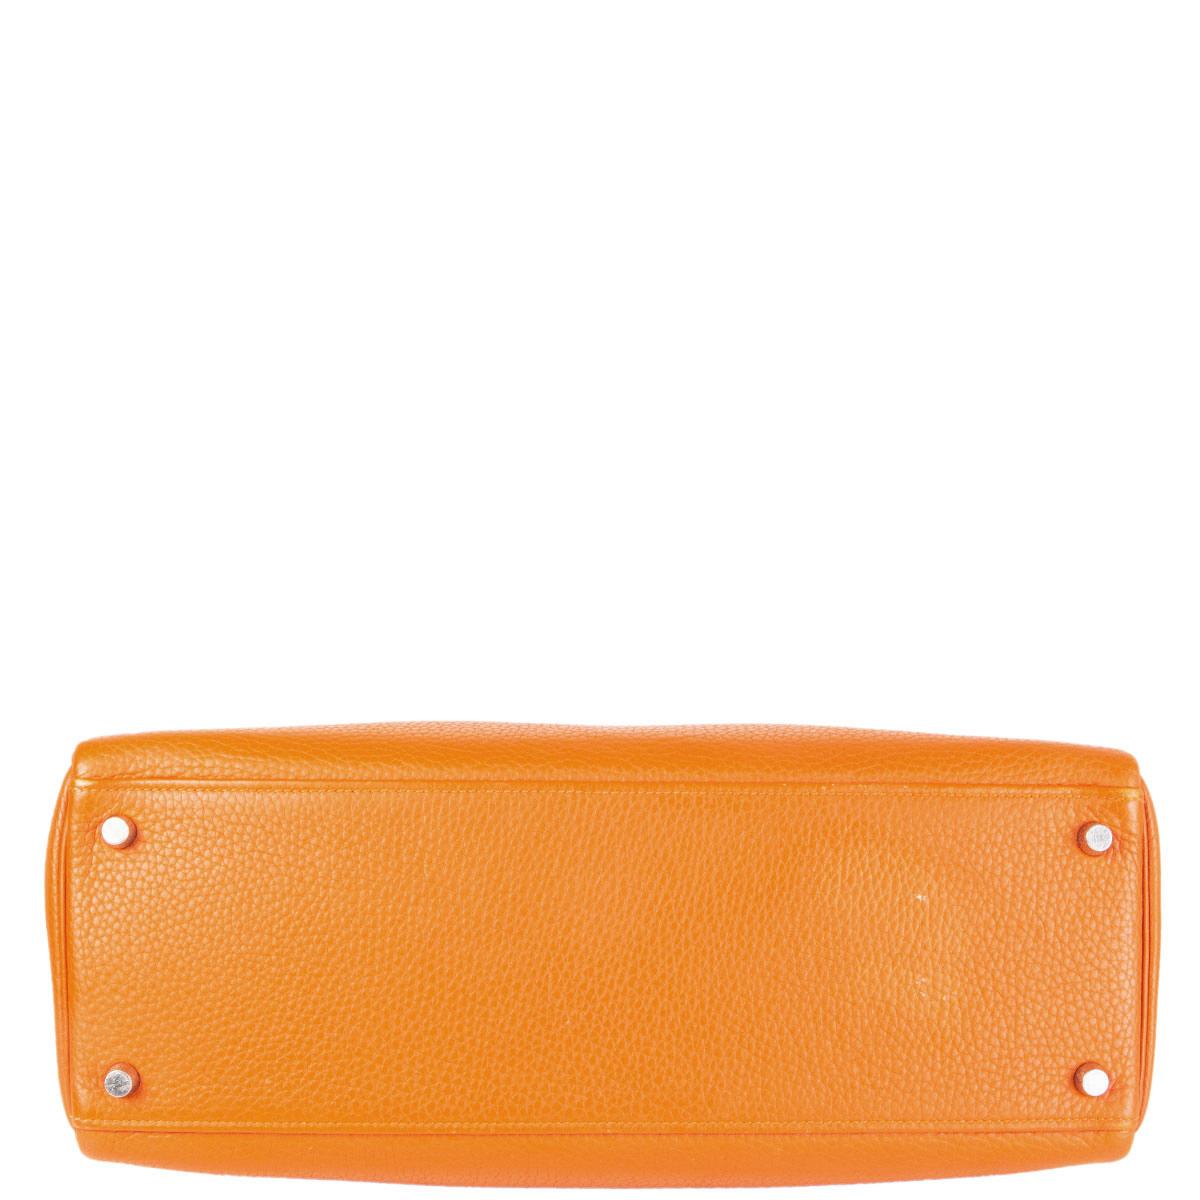 Orange HERMES Potiron orange Clemence leather KELLY 35 RETOURNE Bag